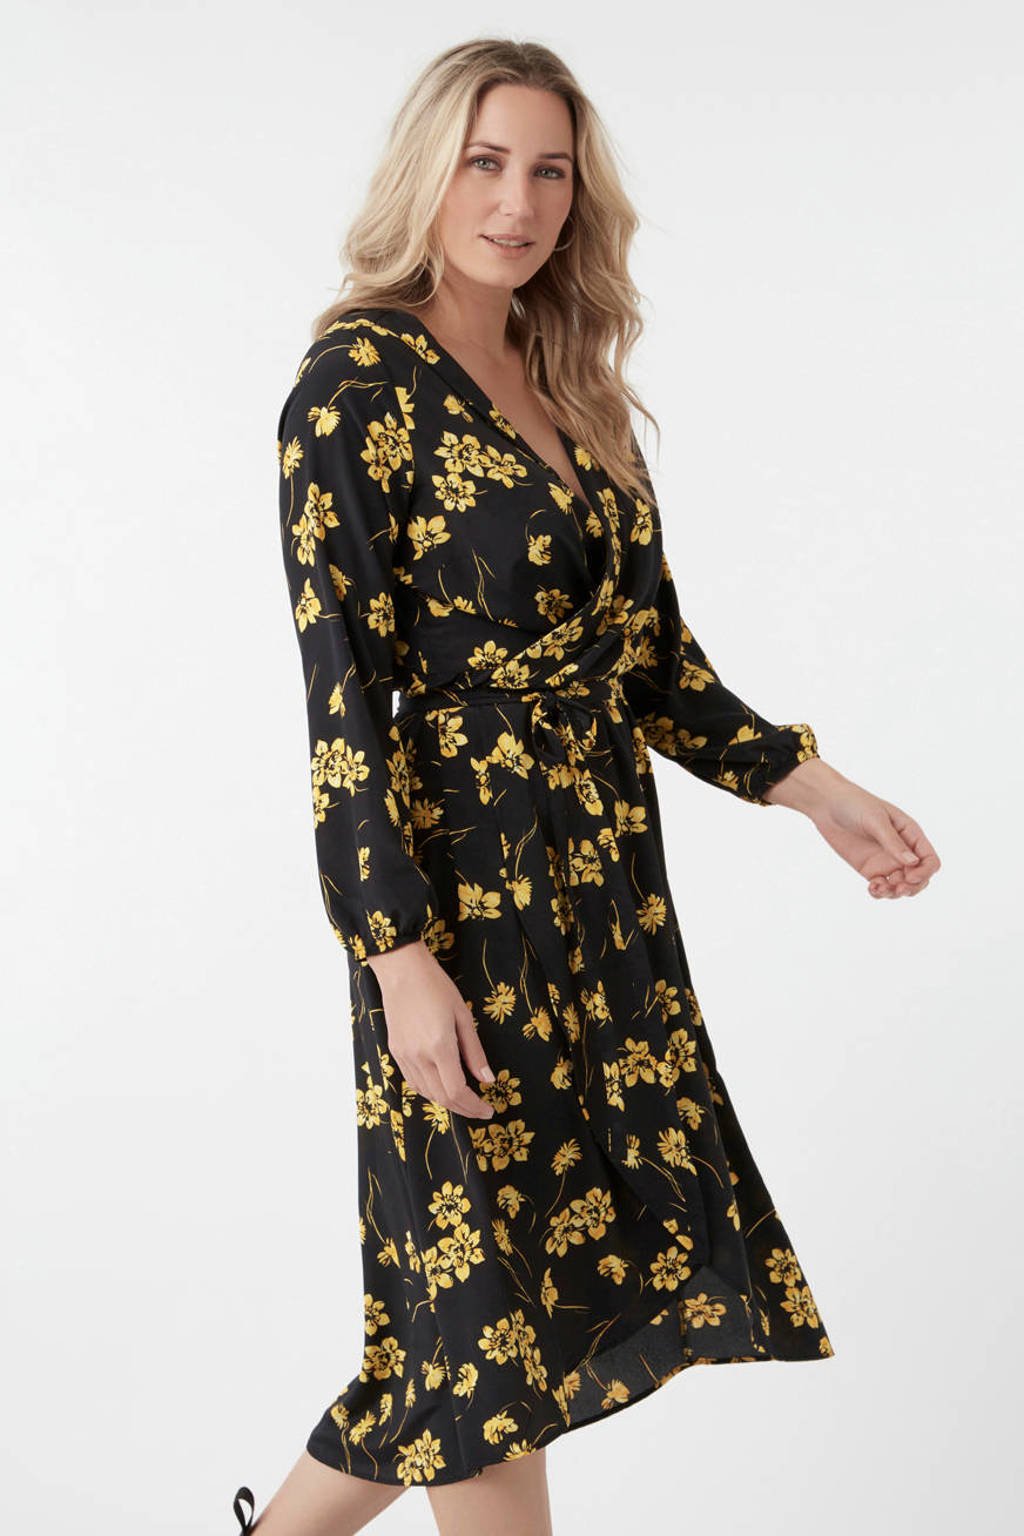 Interactie blauwe vinvis spreken MS Mode gebloemde maxi jurk zwart/geel | wehkamp